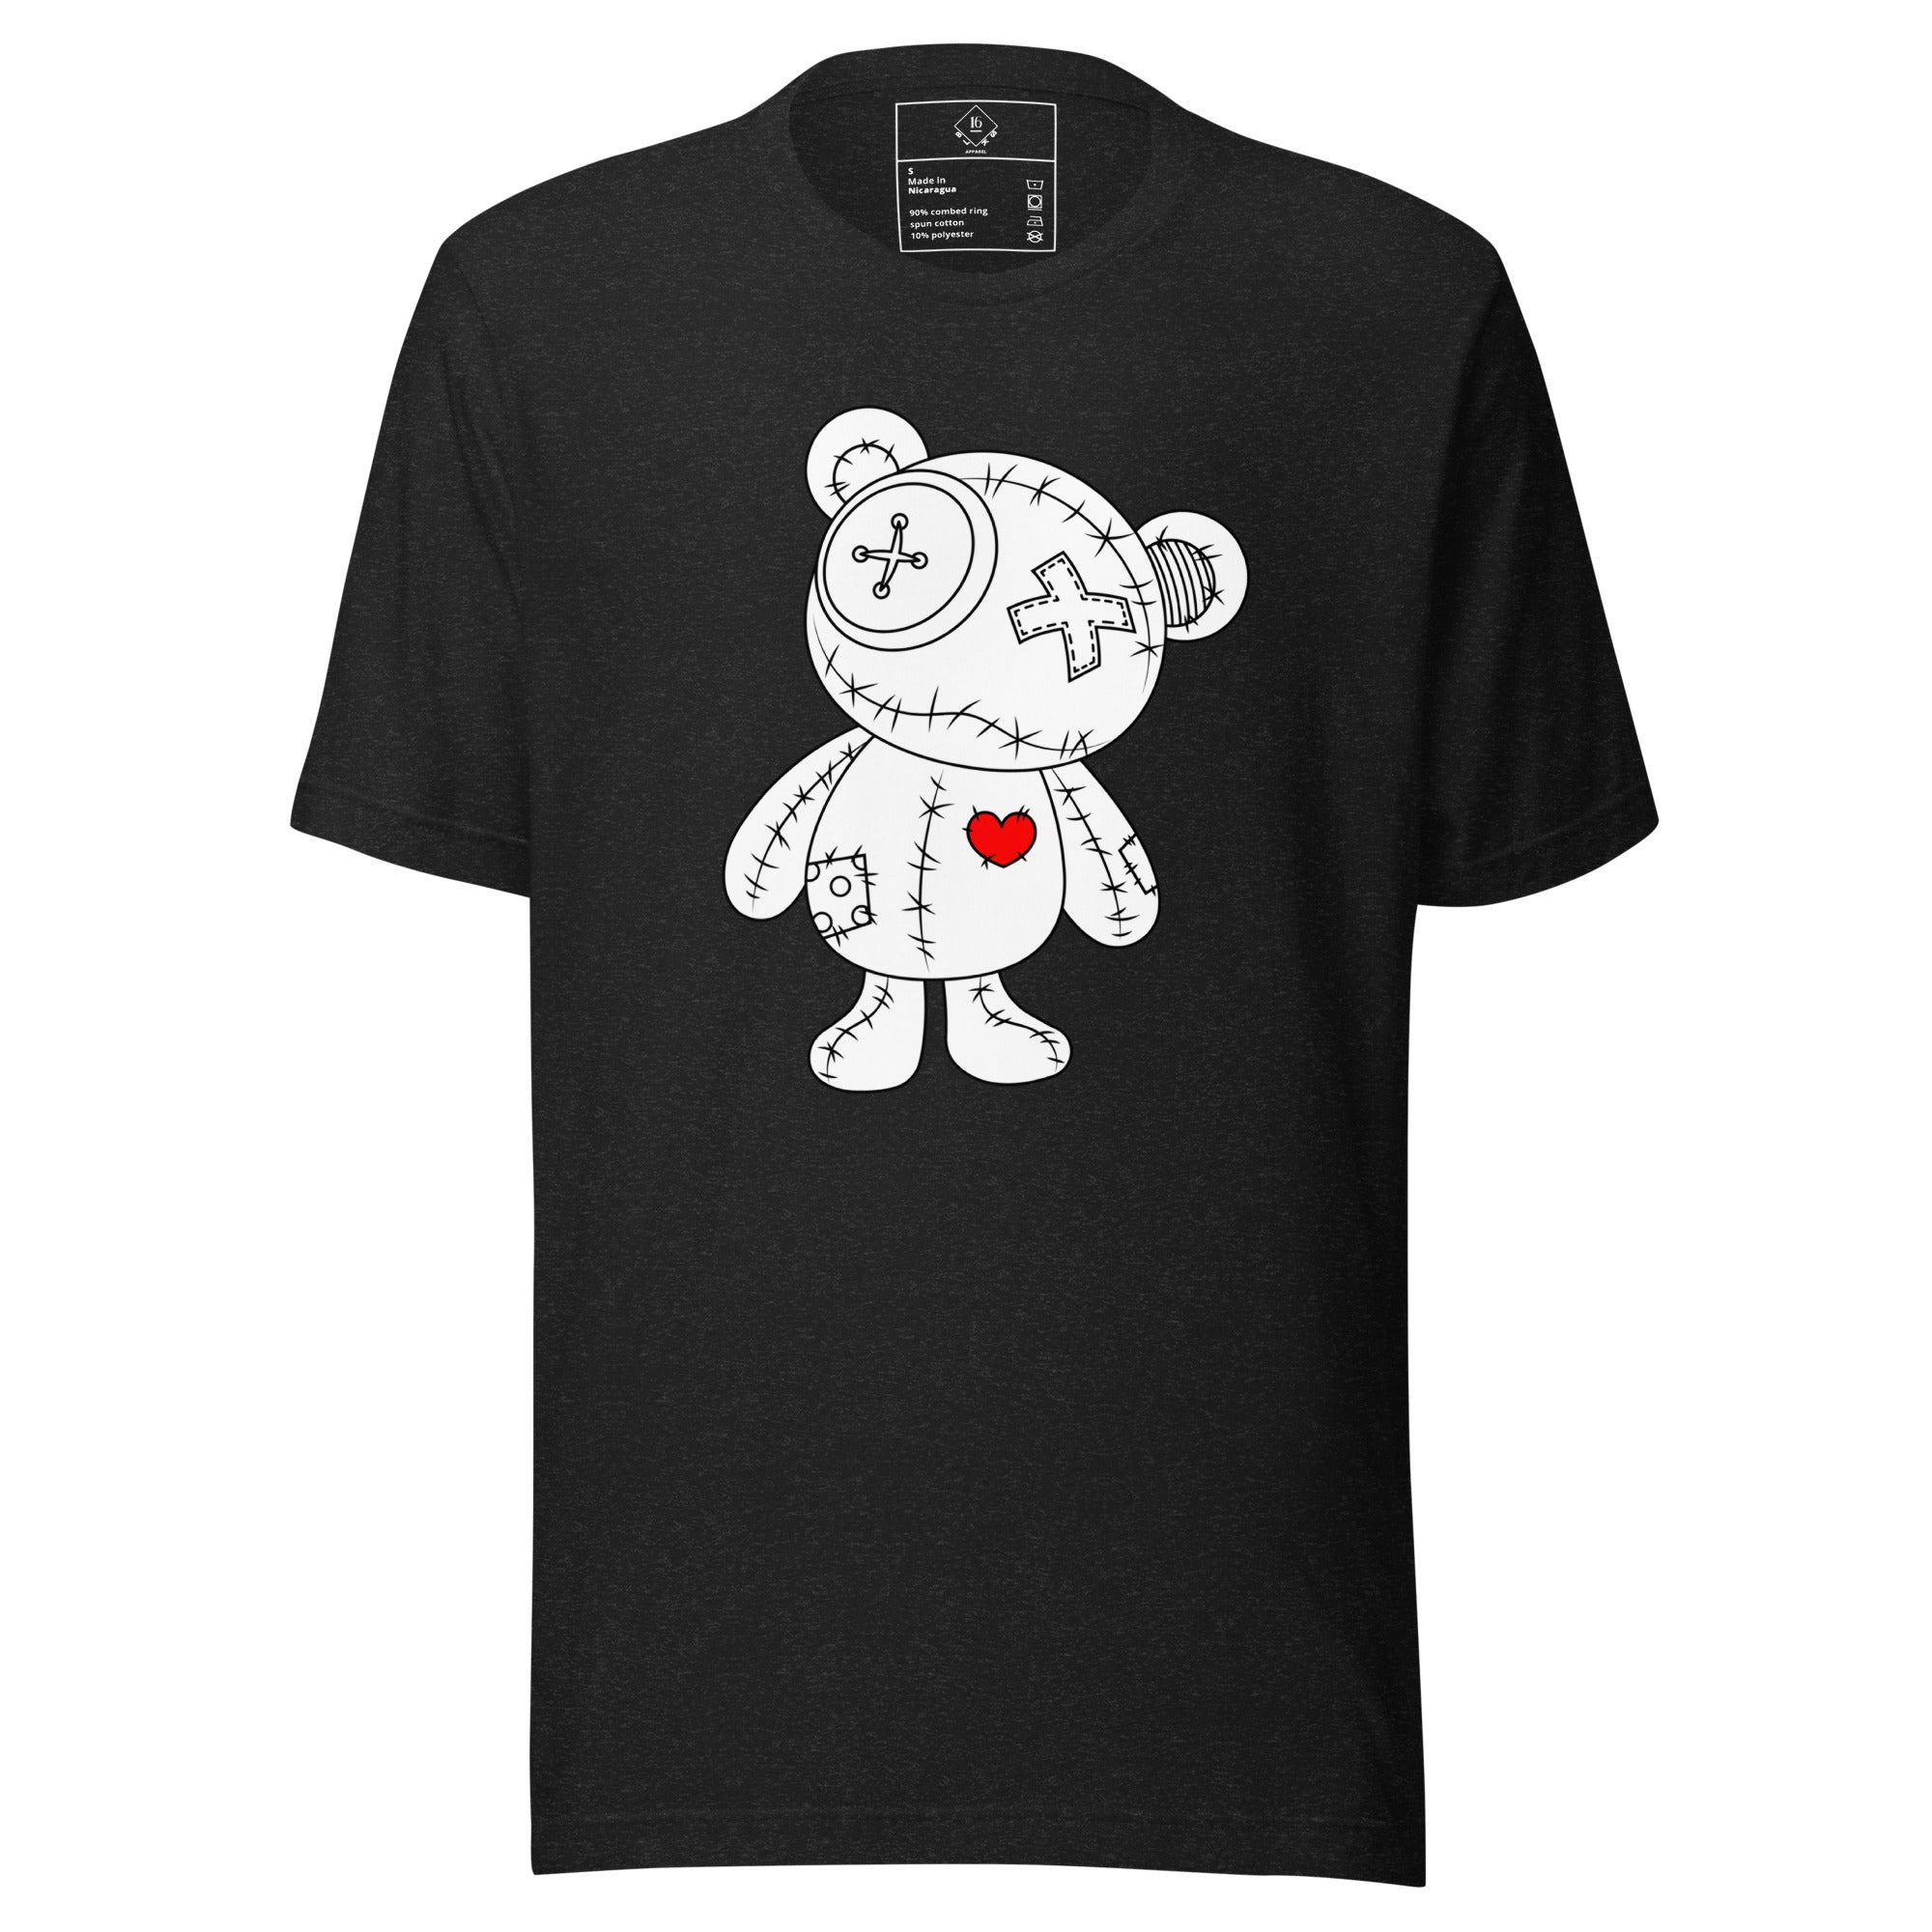 love bear shirt a bear with a read heart. color black heather